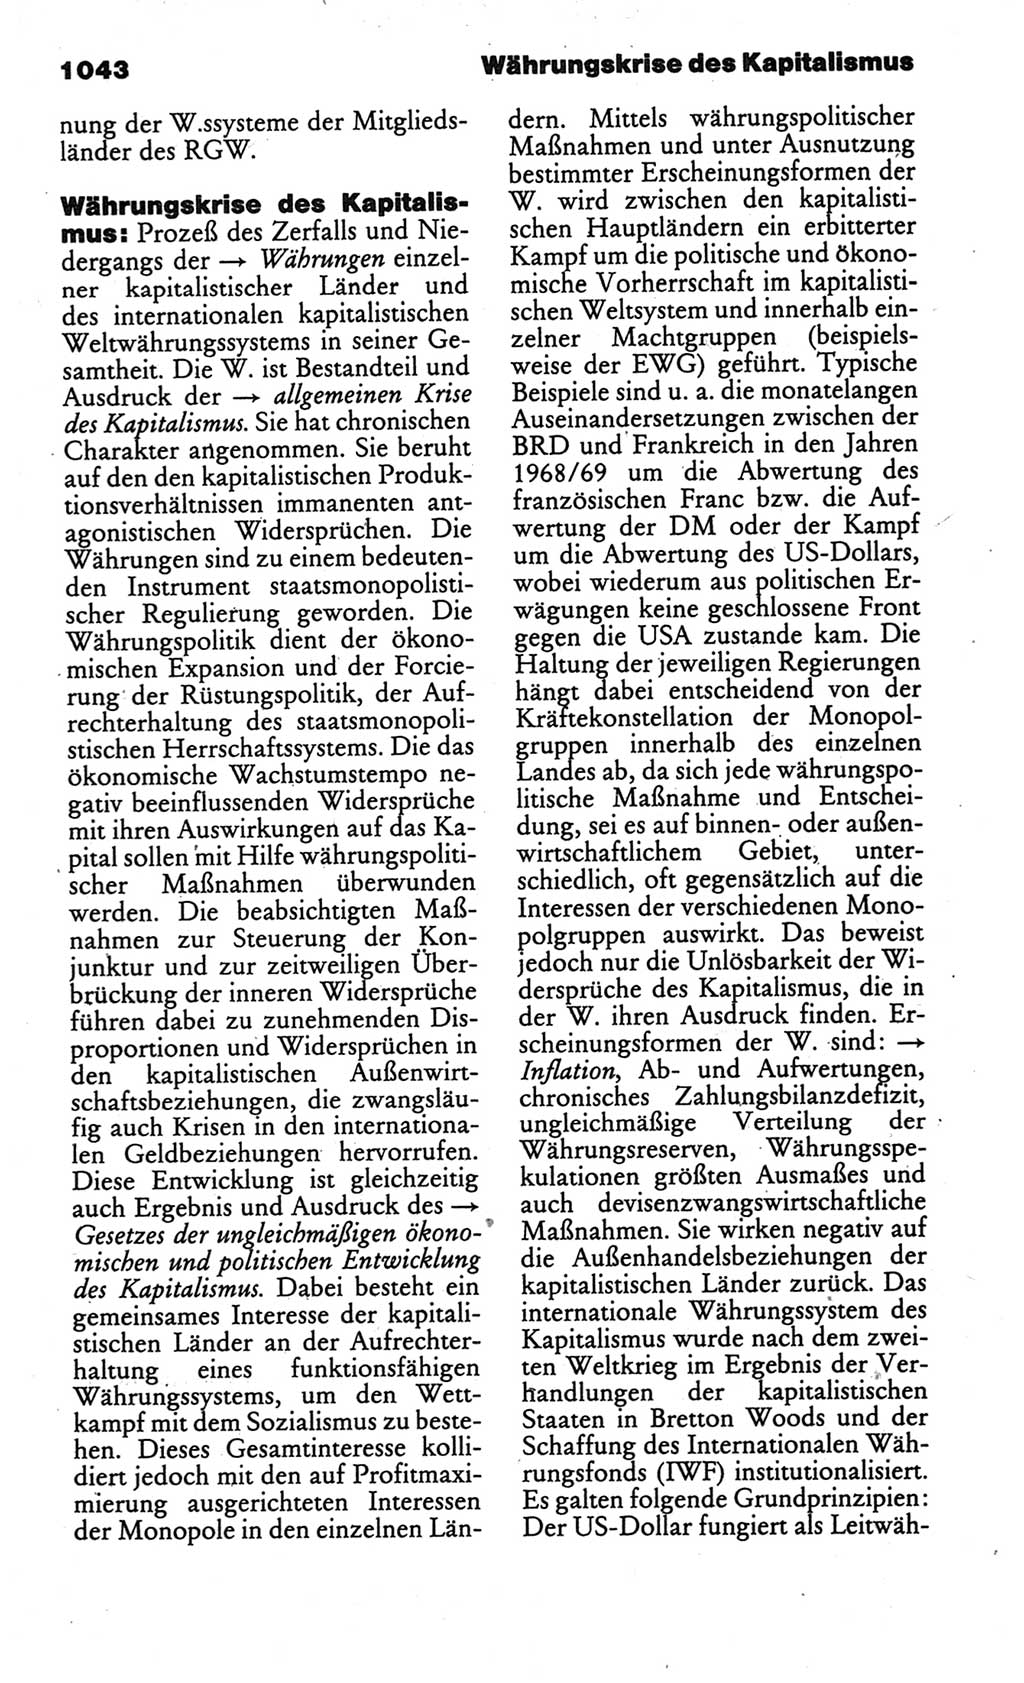 Kleines politisches Wörterbuch [Deutsche Demokratische Republik (DDR)] 1986, Seite 1043 (Kl. pol. Wb. DDR 1986, S. 1043)